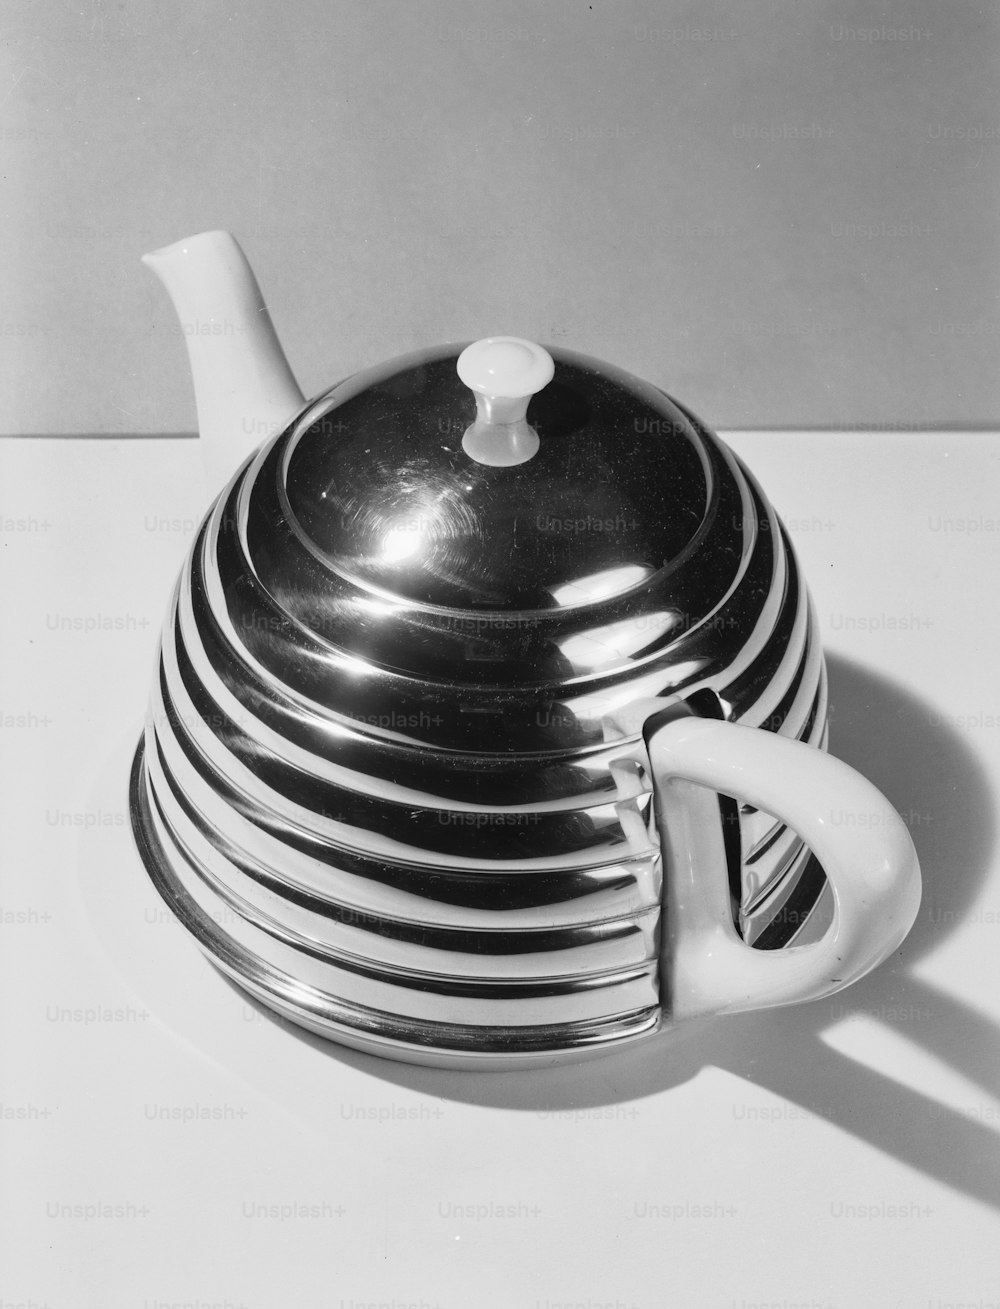 12. November 1954: Eine Teekanne in einem Metallgehäuse, das wie ein Bienenstock aussieht.  (Foto von Chaloner Woods / Getty Images)